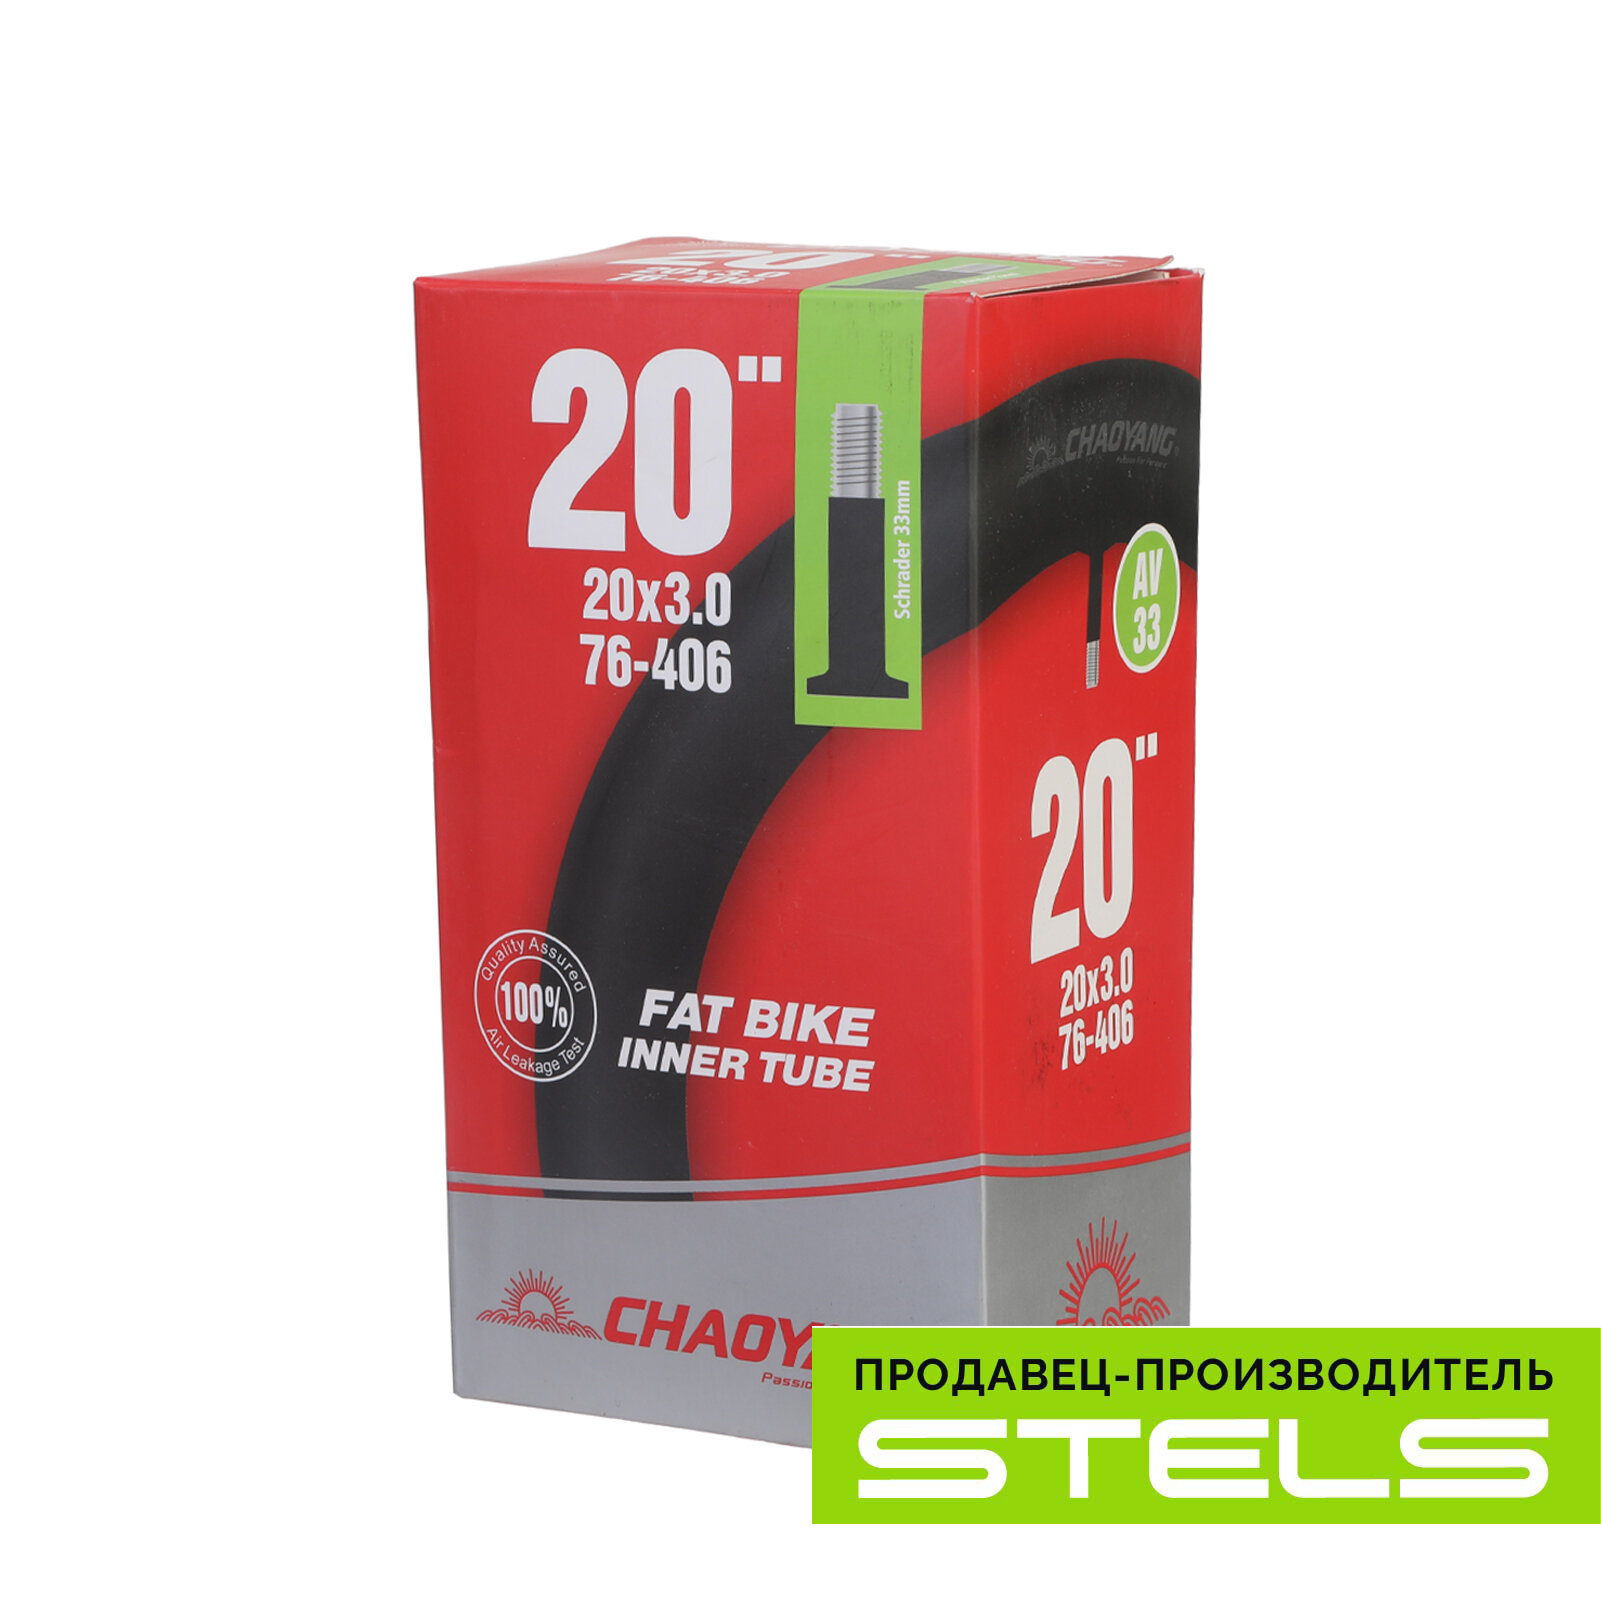 Велокамера STELS/CHAO YANG 20"x3.0" автониппель (полу FAT BIKE), в индивидуальной упаковке (item:010)